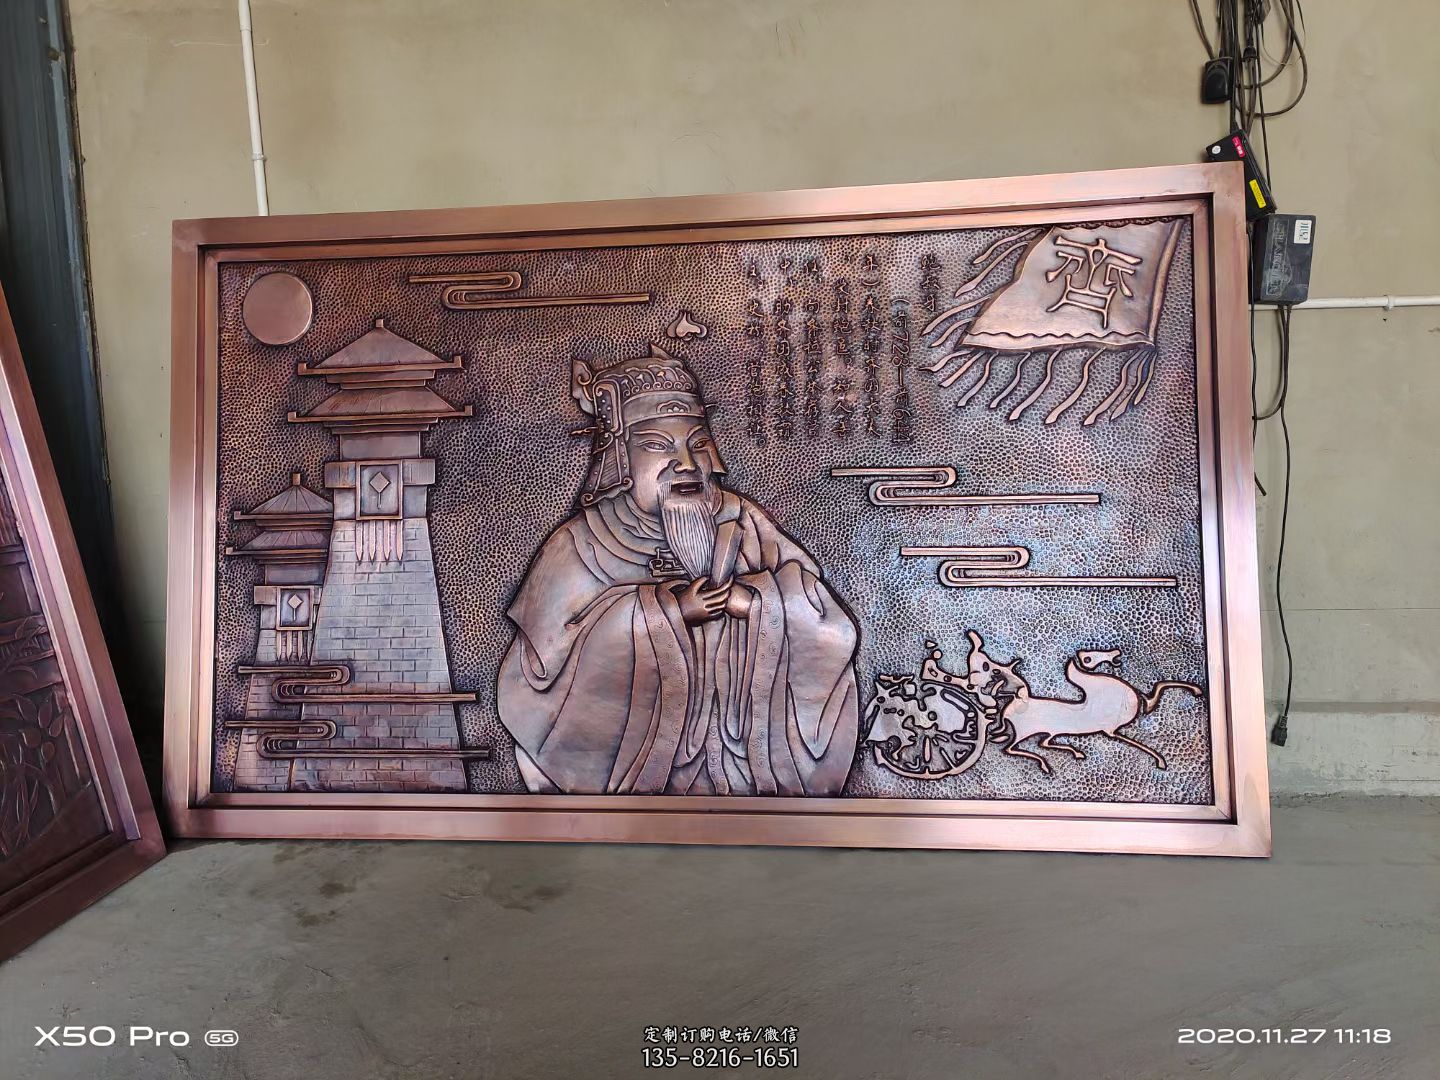 历史名人鲍叔牙紫铜浮雕壁画像